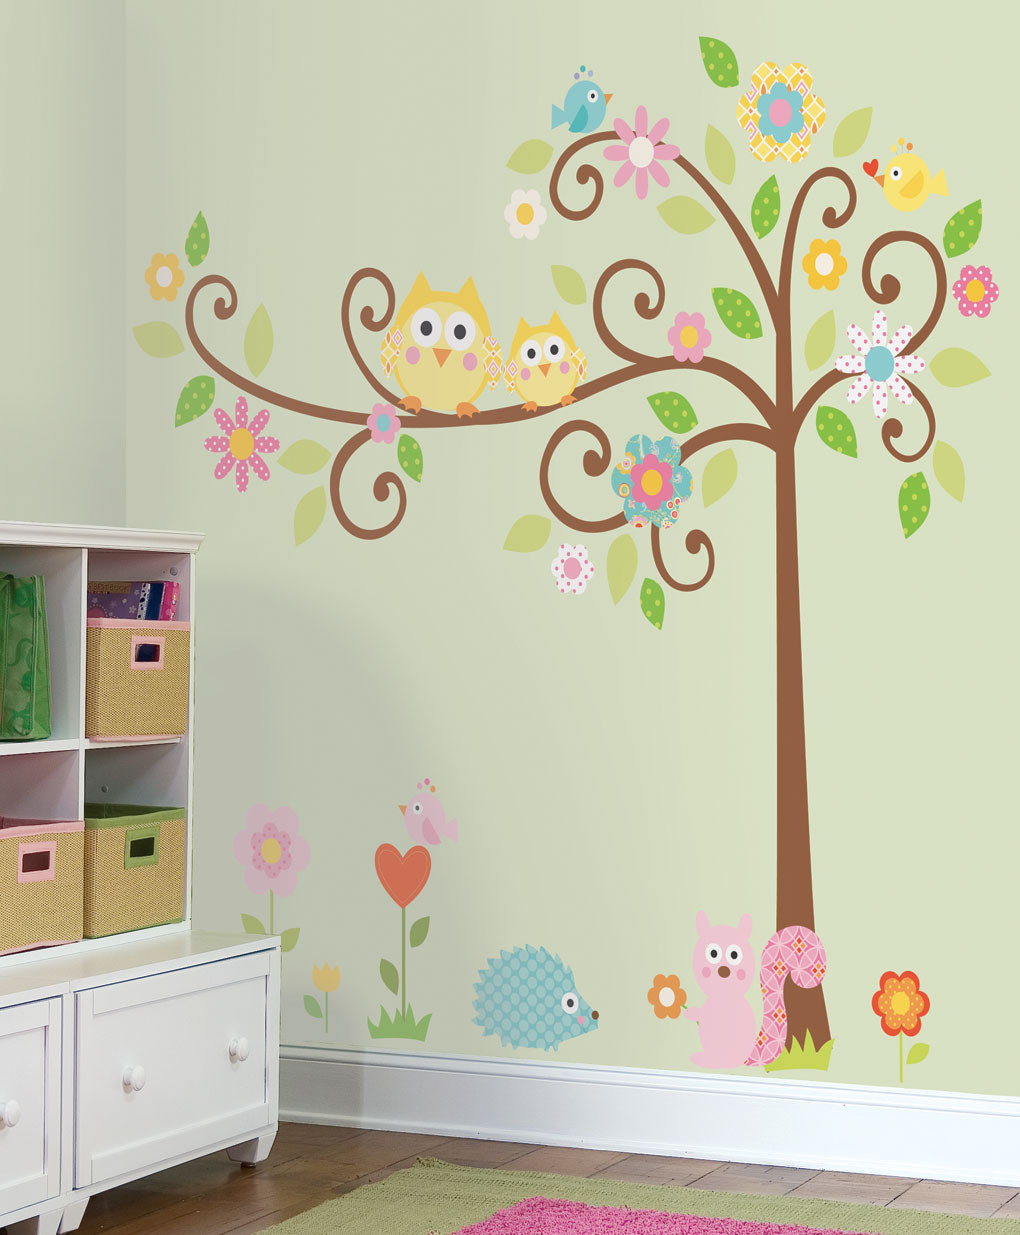 Owl Decor For Kids Room
 Home Design — Owl Decor For Girls Room